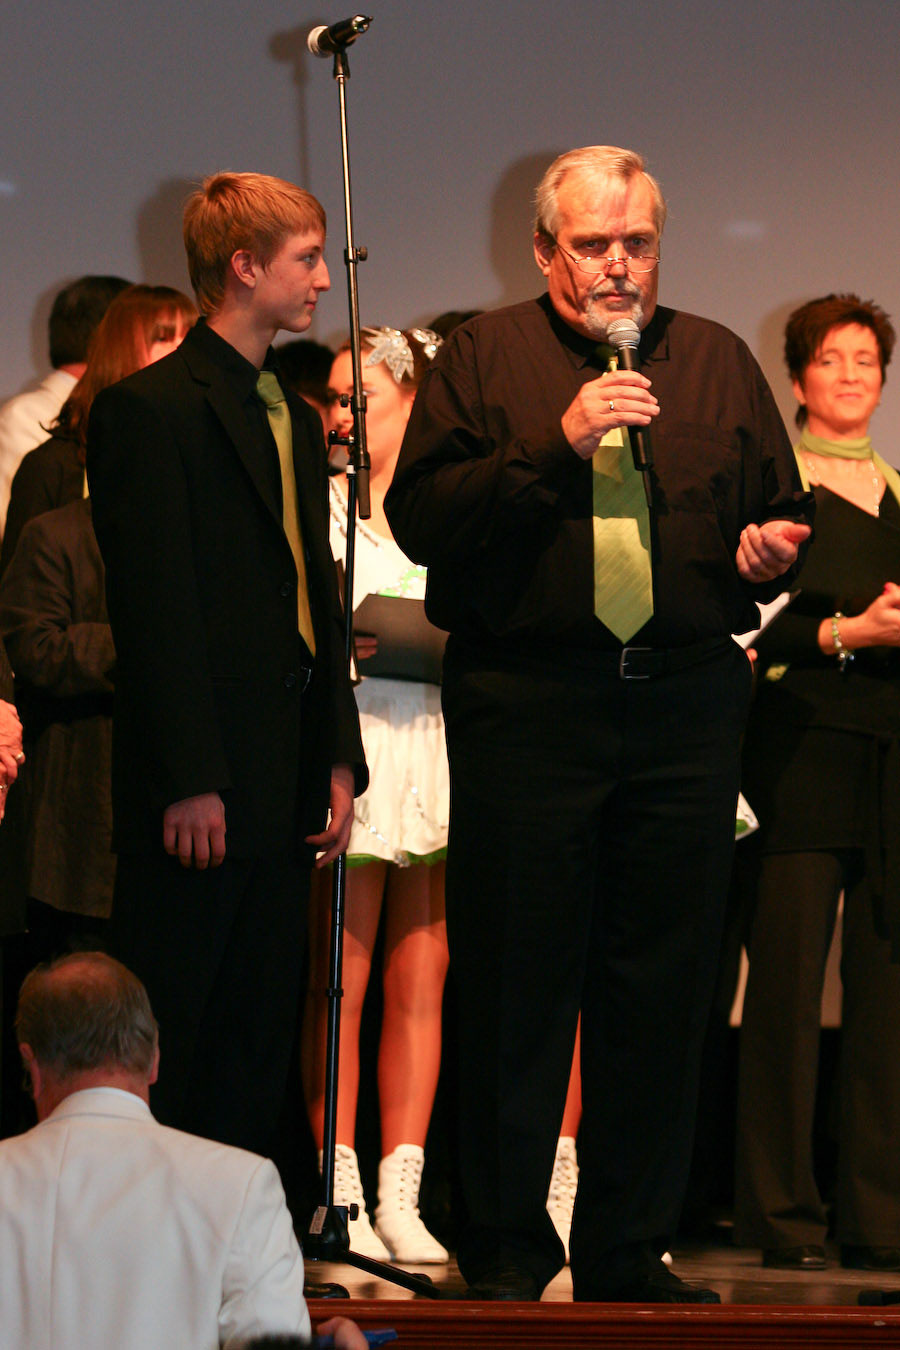 24.11.2007: Ehrenabend und Ordensfeier